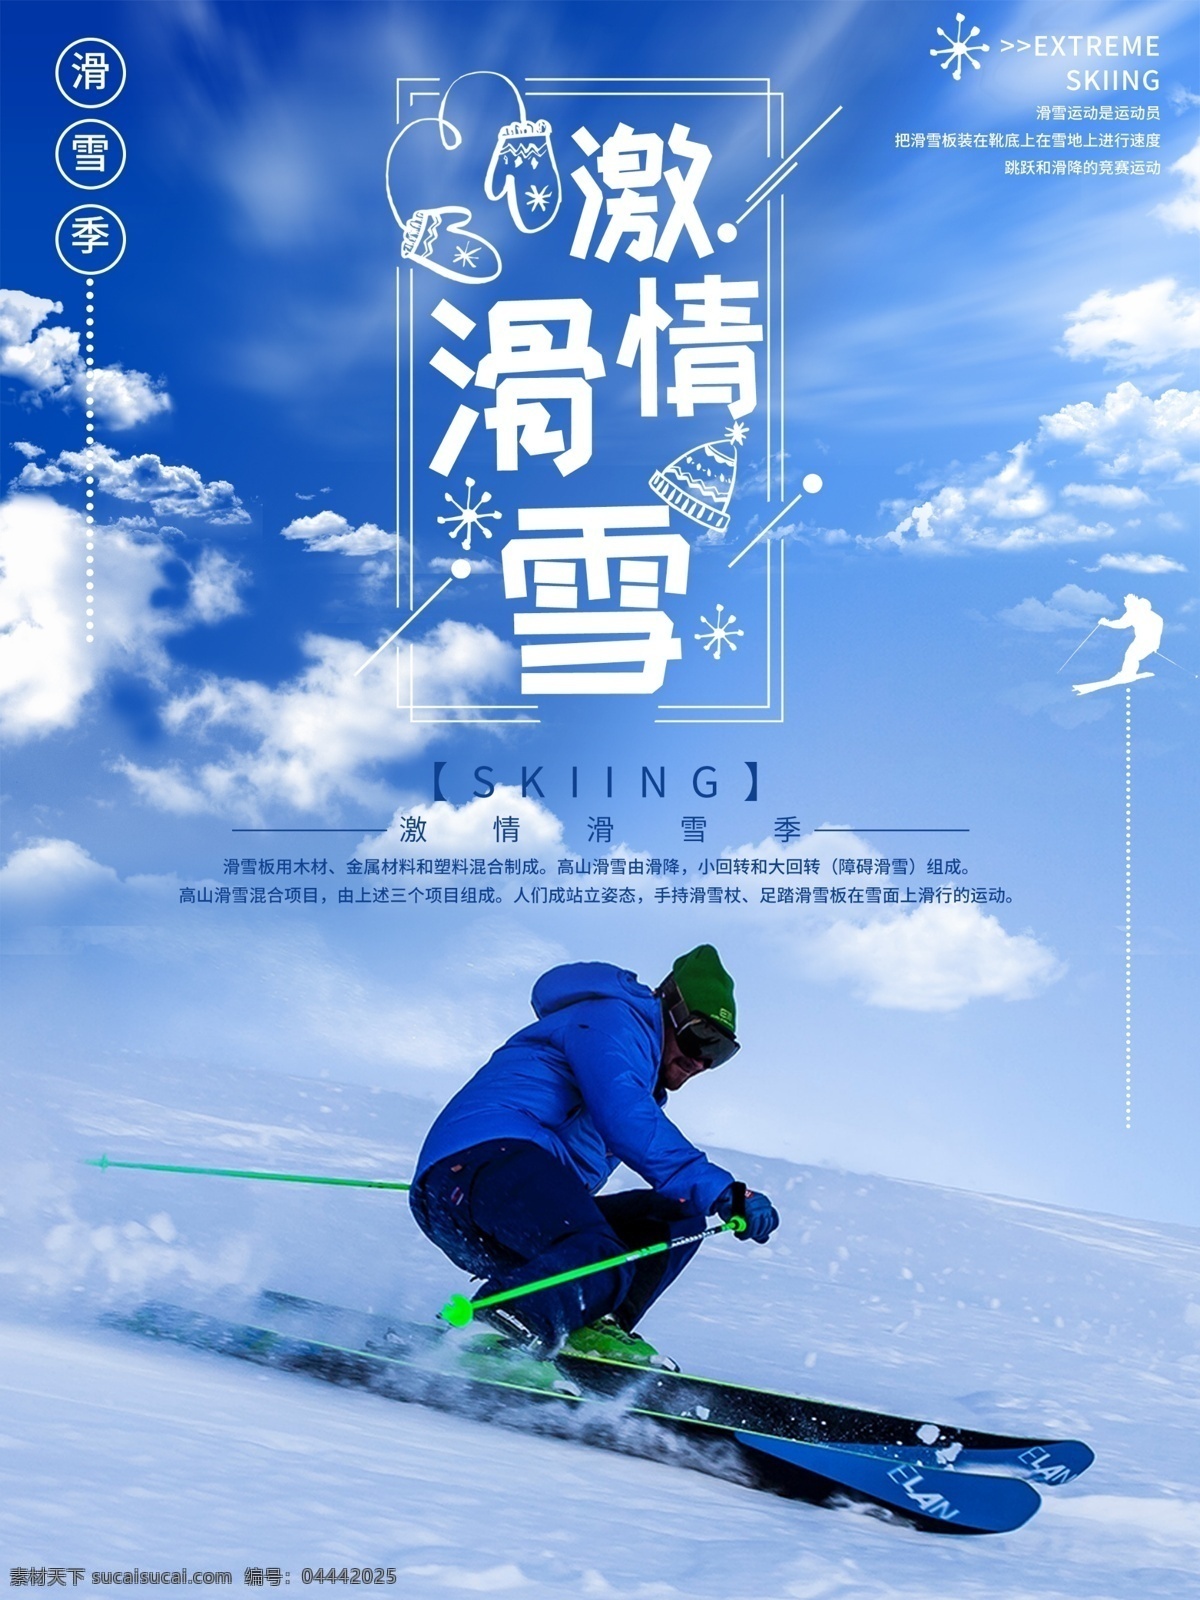 滑雪海报 滑雪运动 滑雪宣传 滑雪展板 登山滑雪 滑雪挑战 激情滑雪 滑雪背景 滑雪素材 滑雪文化 滑雪体育 滑雪创新 滑雪篇 极限滑雪 滑雪广告 滑雪精神 滑雪形象 滑雪场 滑雪比赛 滑雪运动员 滑雪人物 滑雪冬奥会 滑雪北京 滑雪运动会